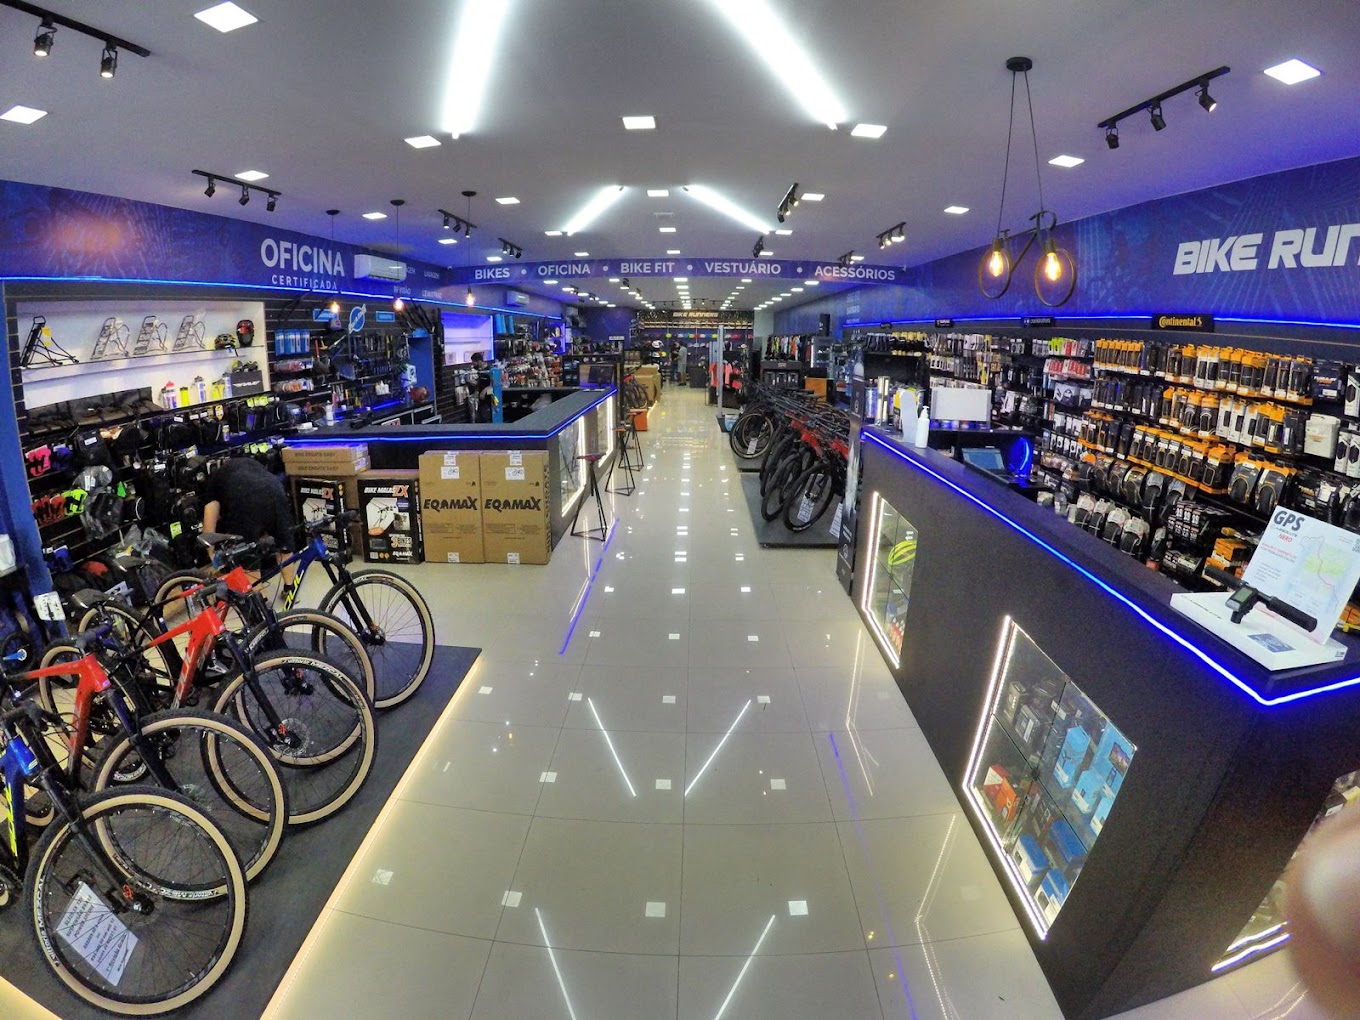 Área interna da loja Bike Runners - Fonte: site Bike Runners.